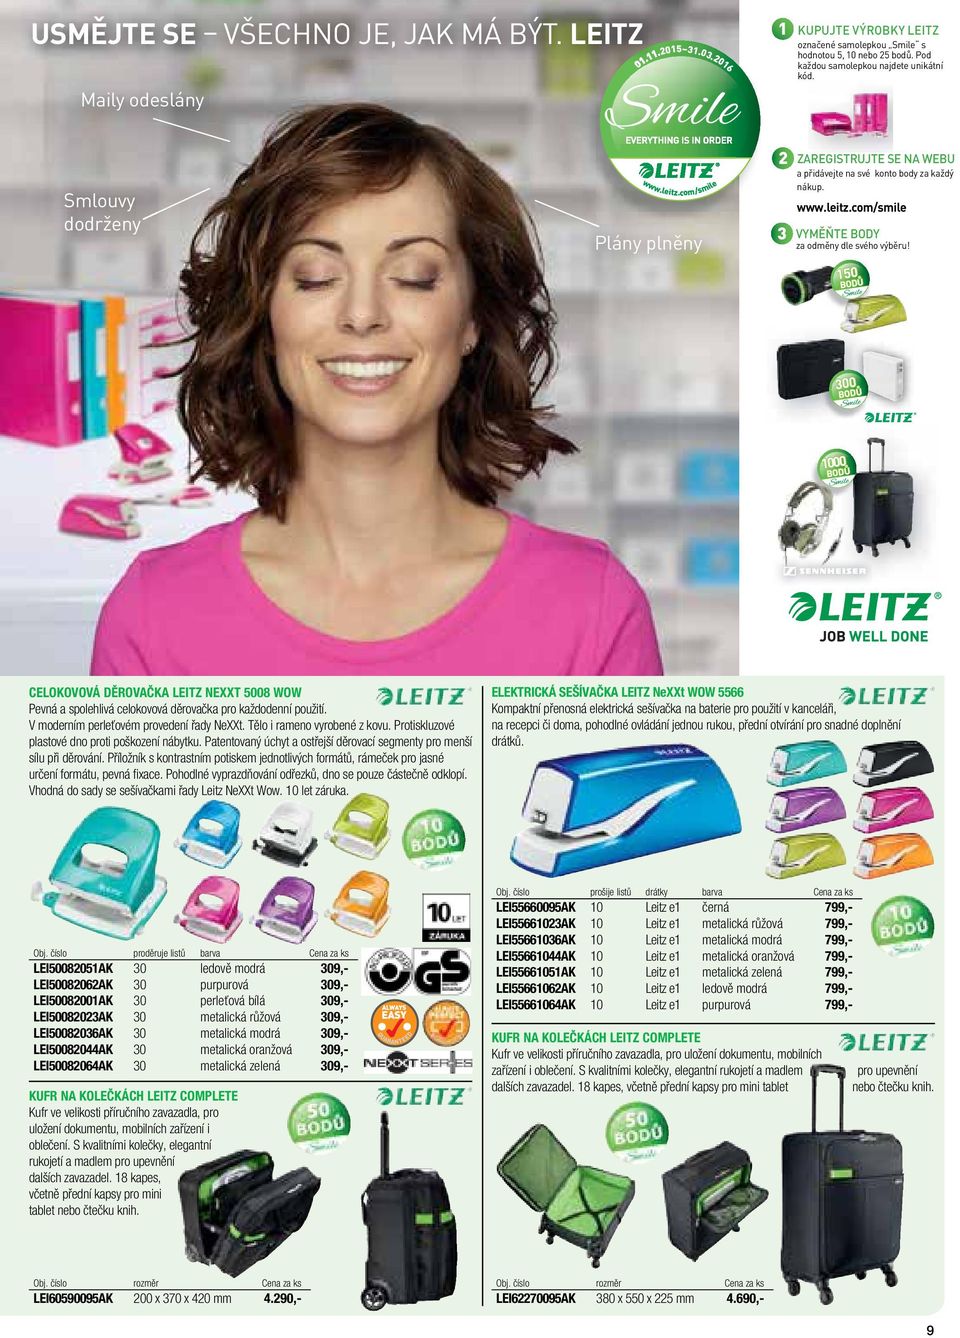 ZAREGISTRUJTE SE NA WEBU a přidávejte na své konto body za každý nákup. www.leitz.com/smile VYMĚŇTE BODY za odměny dle svého výběru!